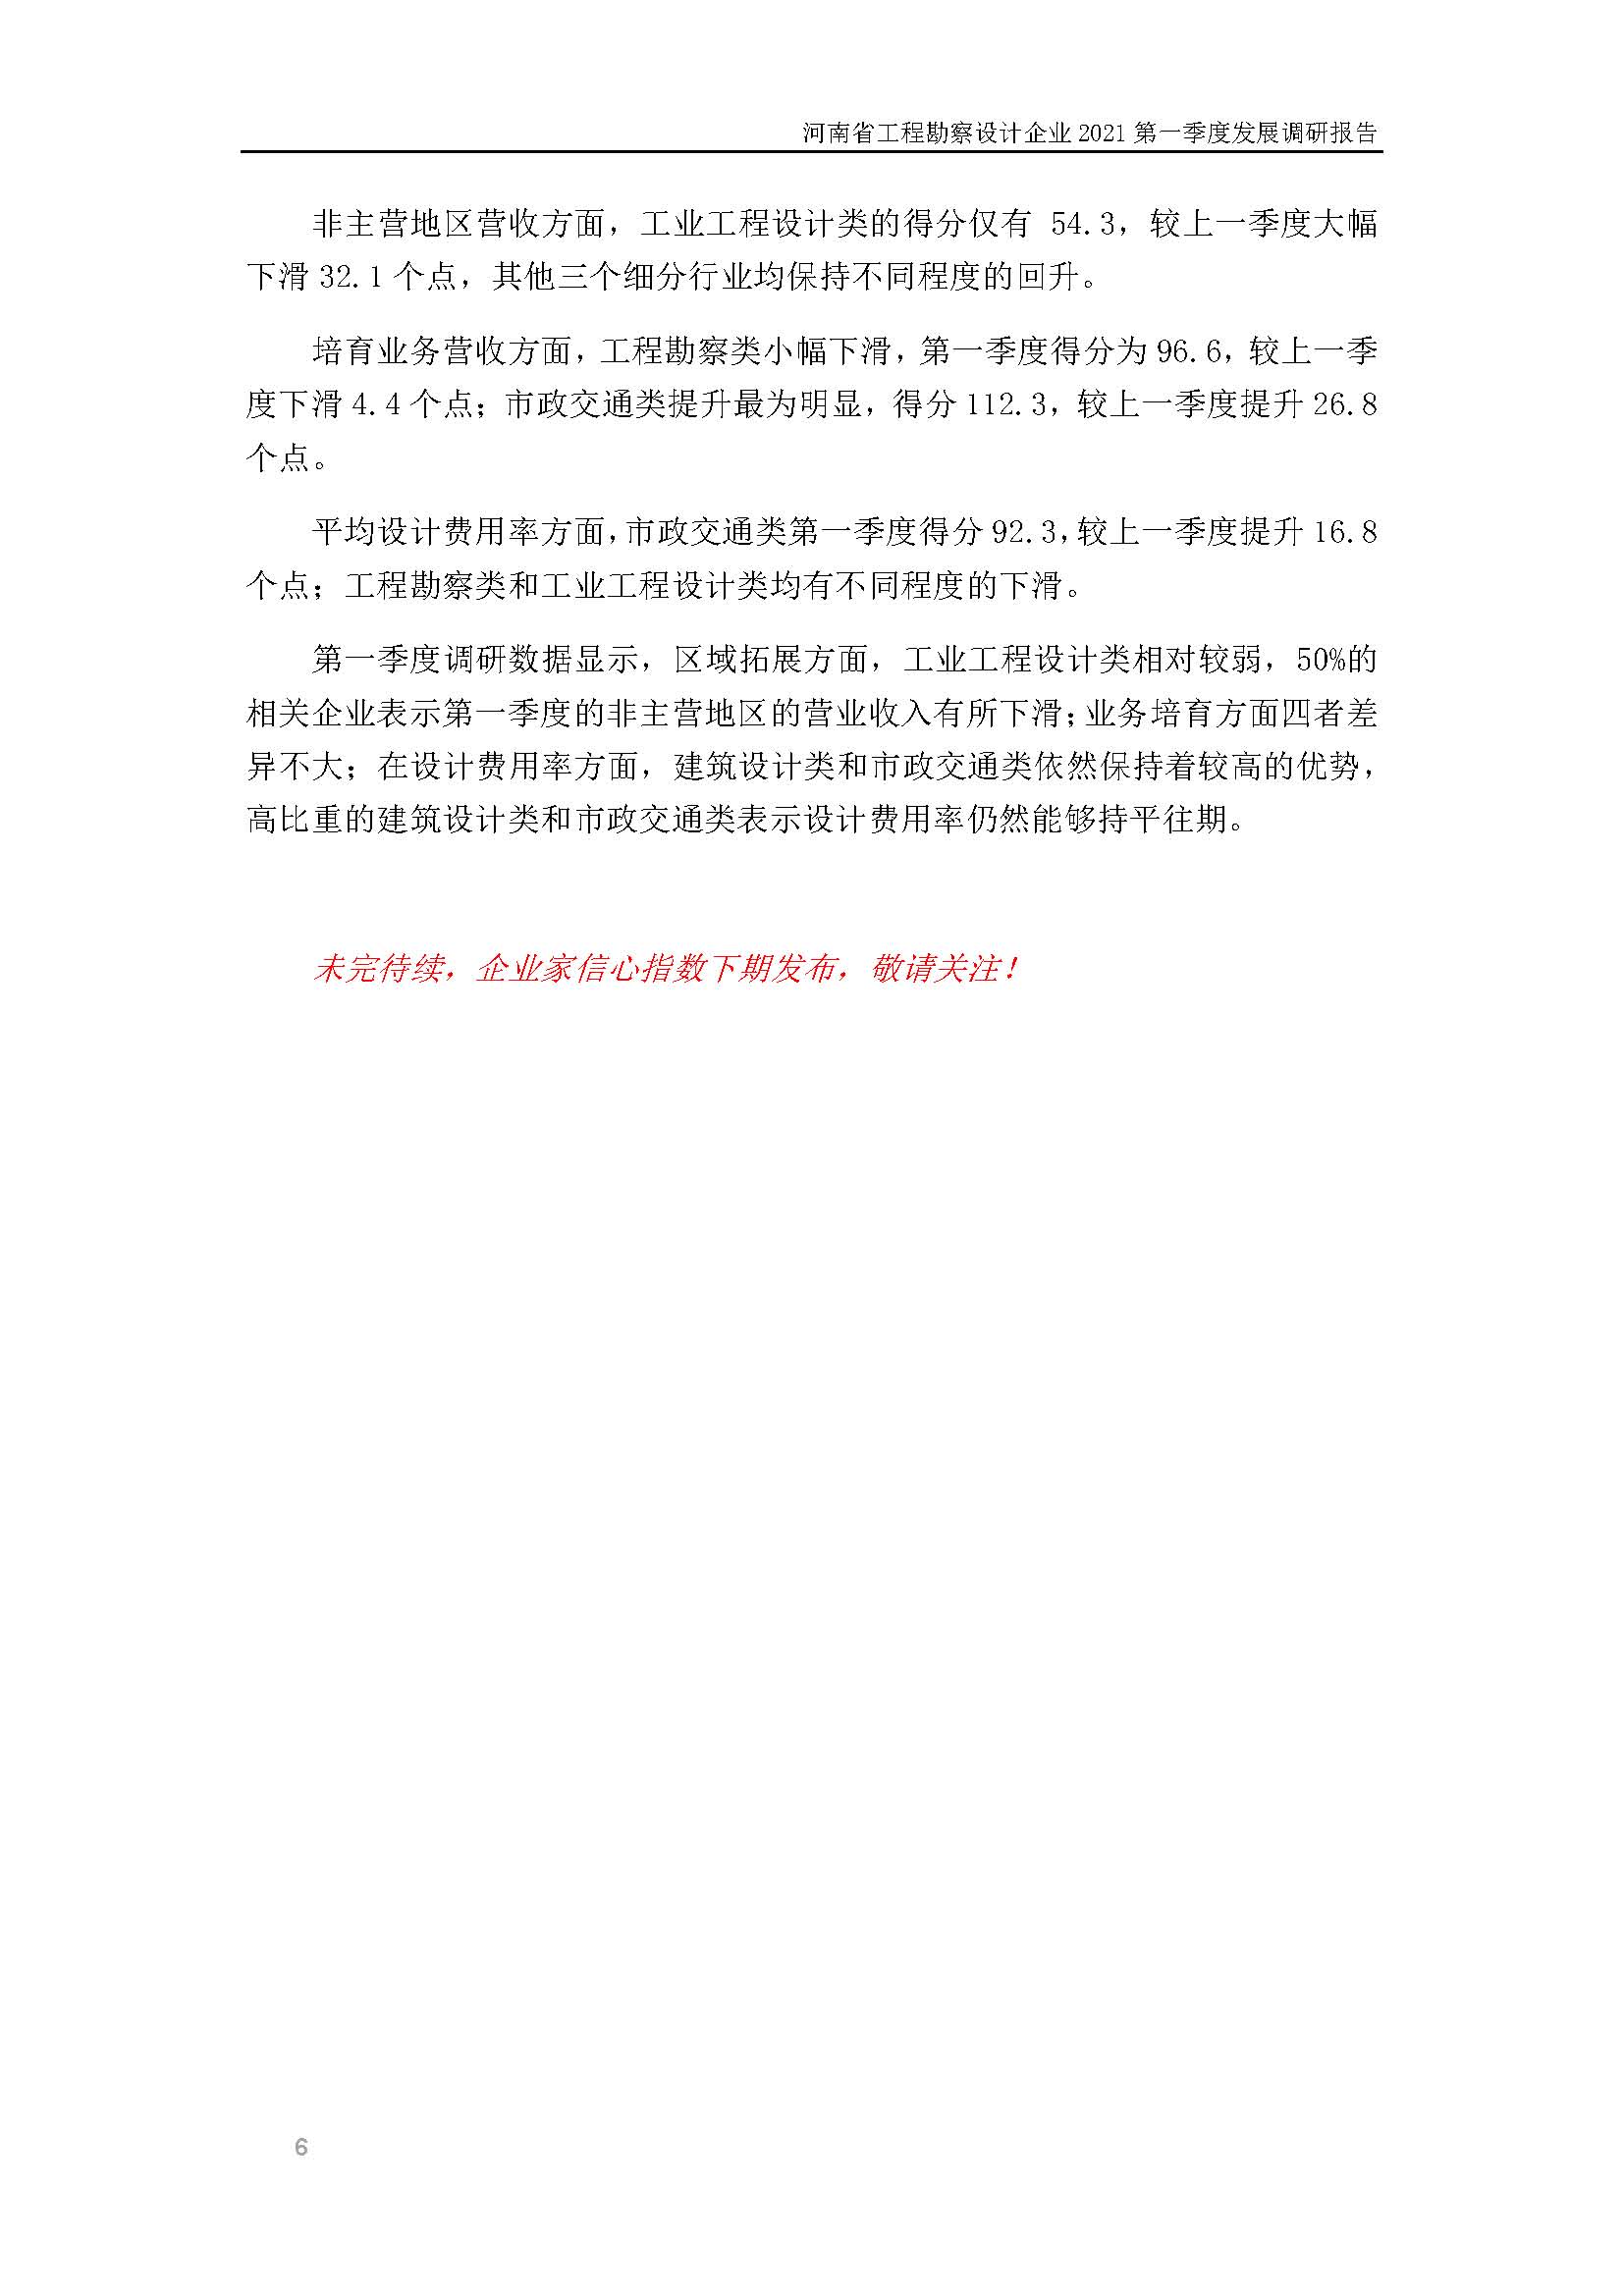 河南省工程勘察设计企业2021第一季度发展调研报告（一）_页面_7.jpg